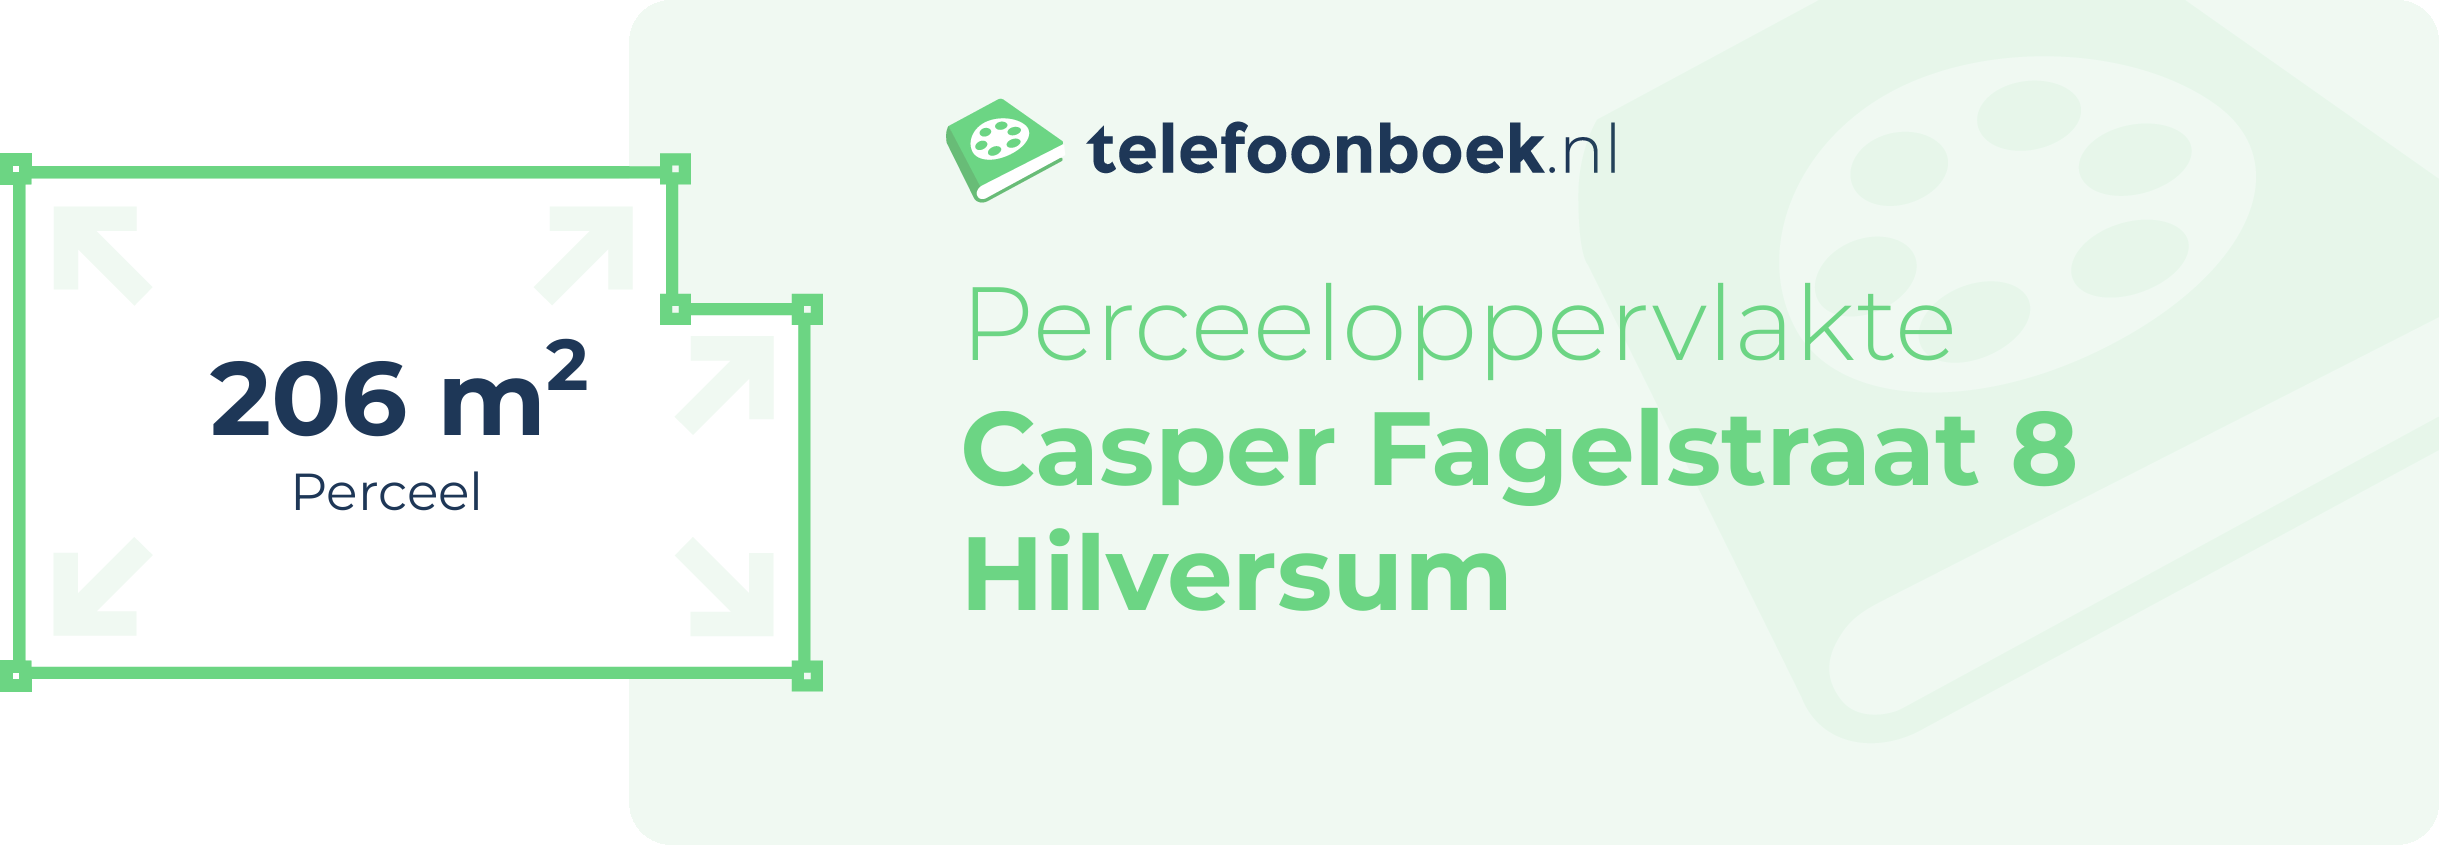 Perceeloppervlakte Casper Fagelstraat 8 Hilversum